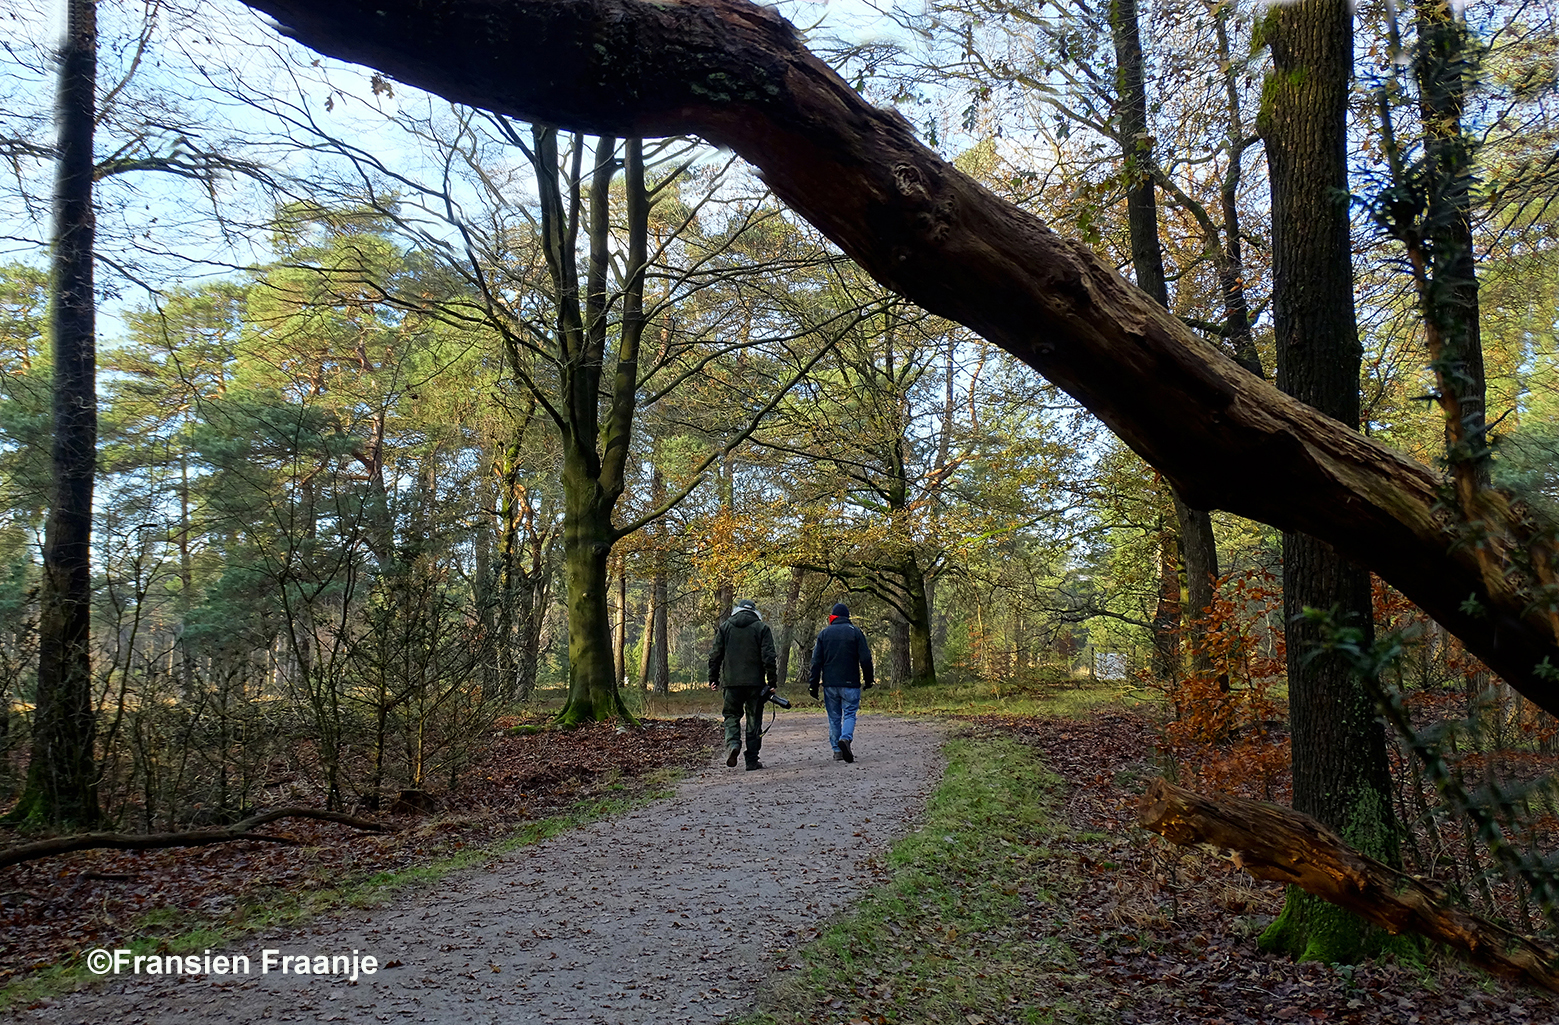 Natuurvrienden Louis en Florus denken er het hunne van en lopen verder - Foto: ©Fransien Fraanje